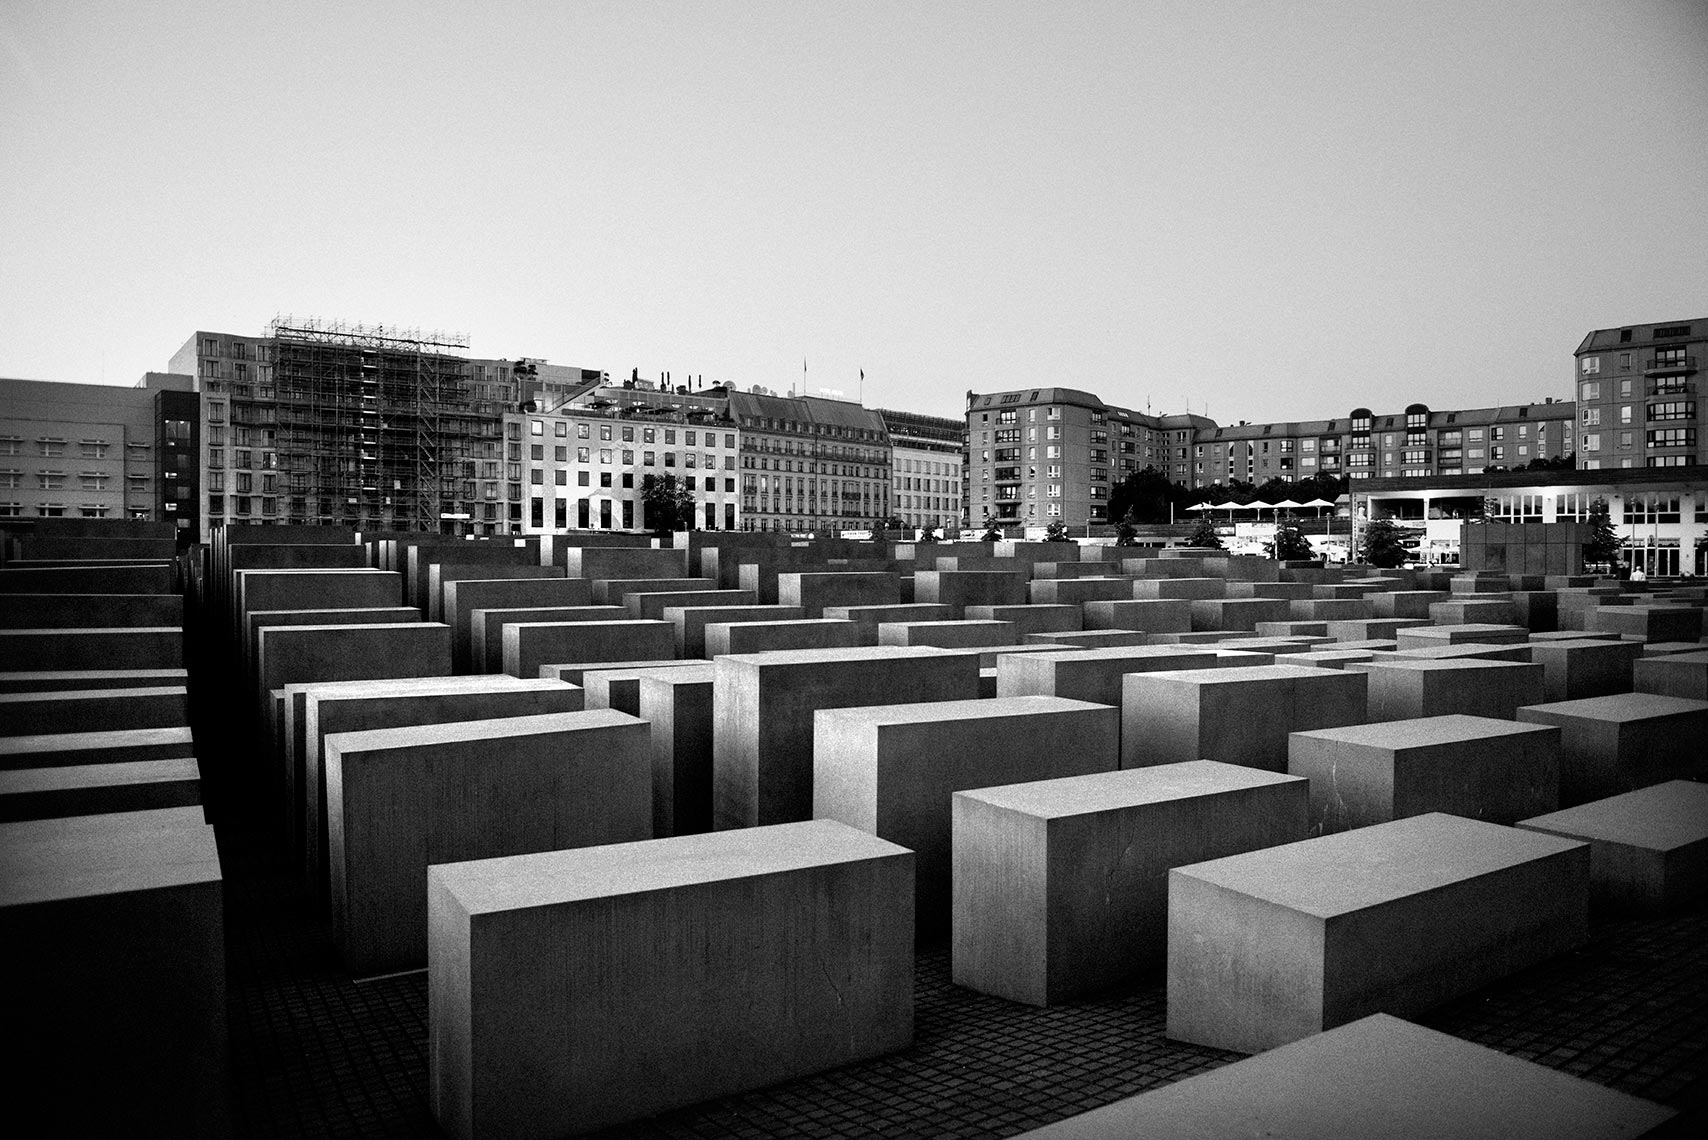 PETER EISENMAN | Holocaust Memorial - Berlin